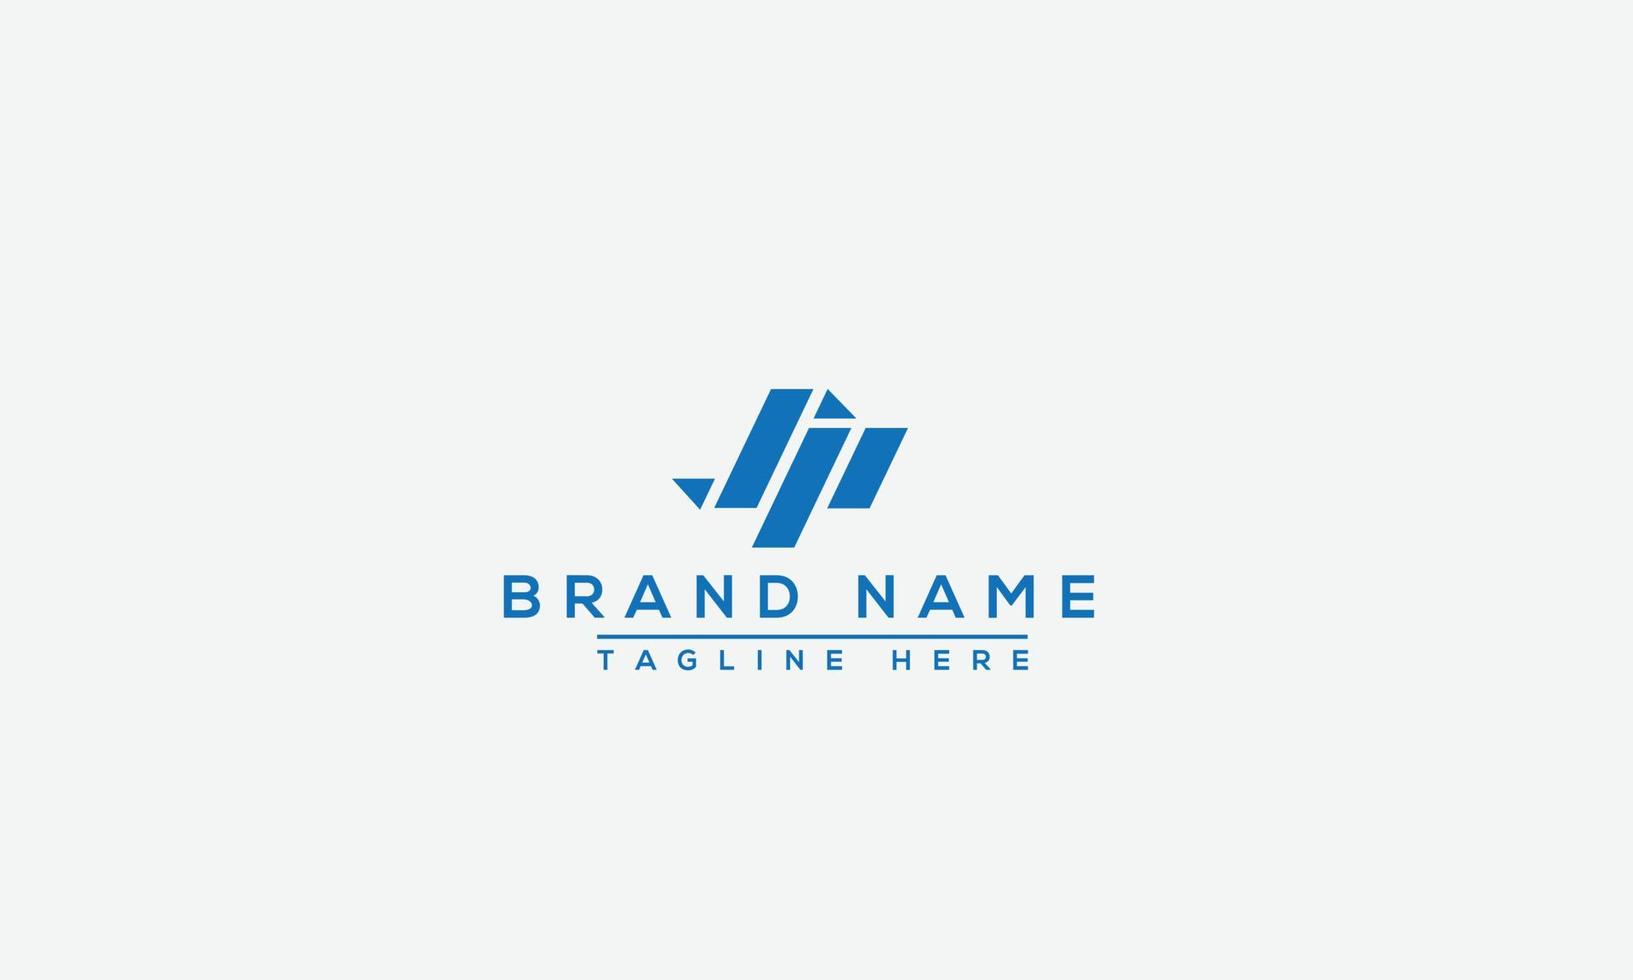 elemento de marca gráfico vectorial de plantilla de diseño de logotipo jp. vector